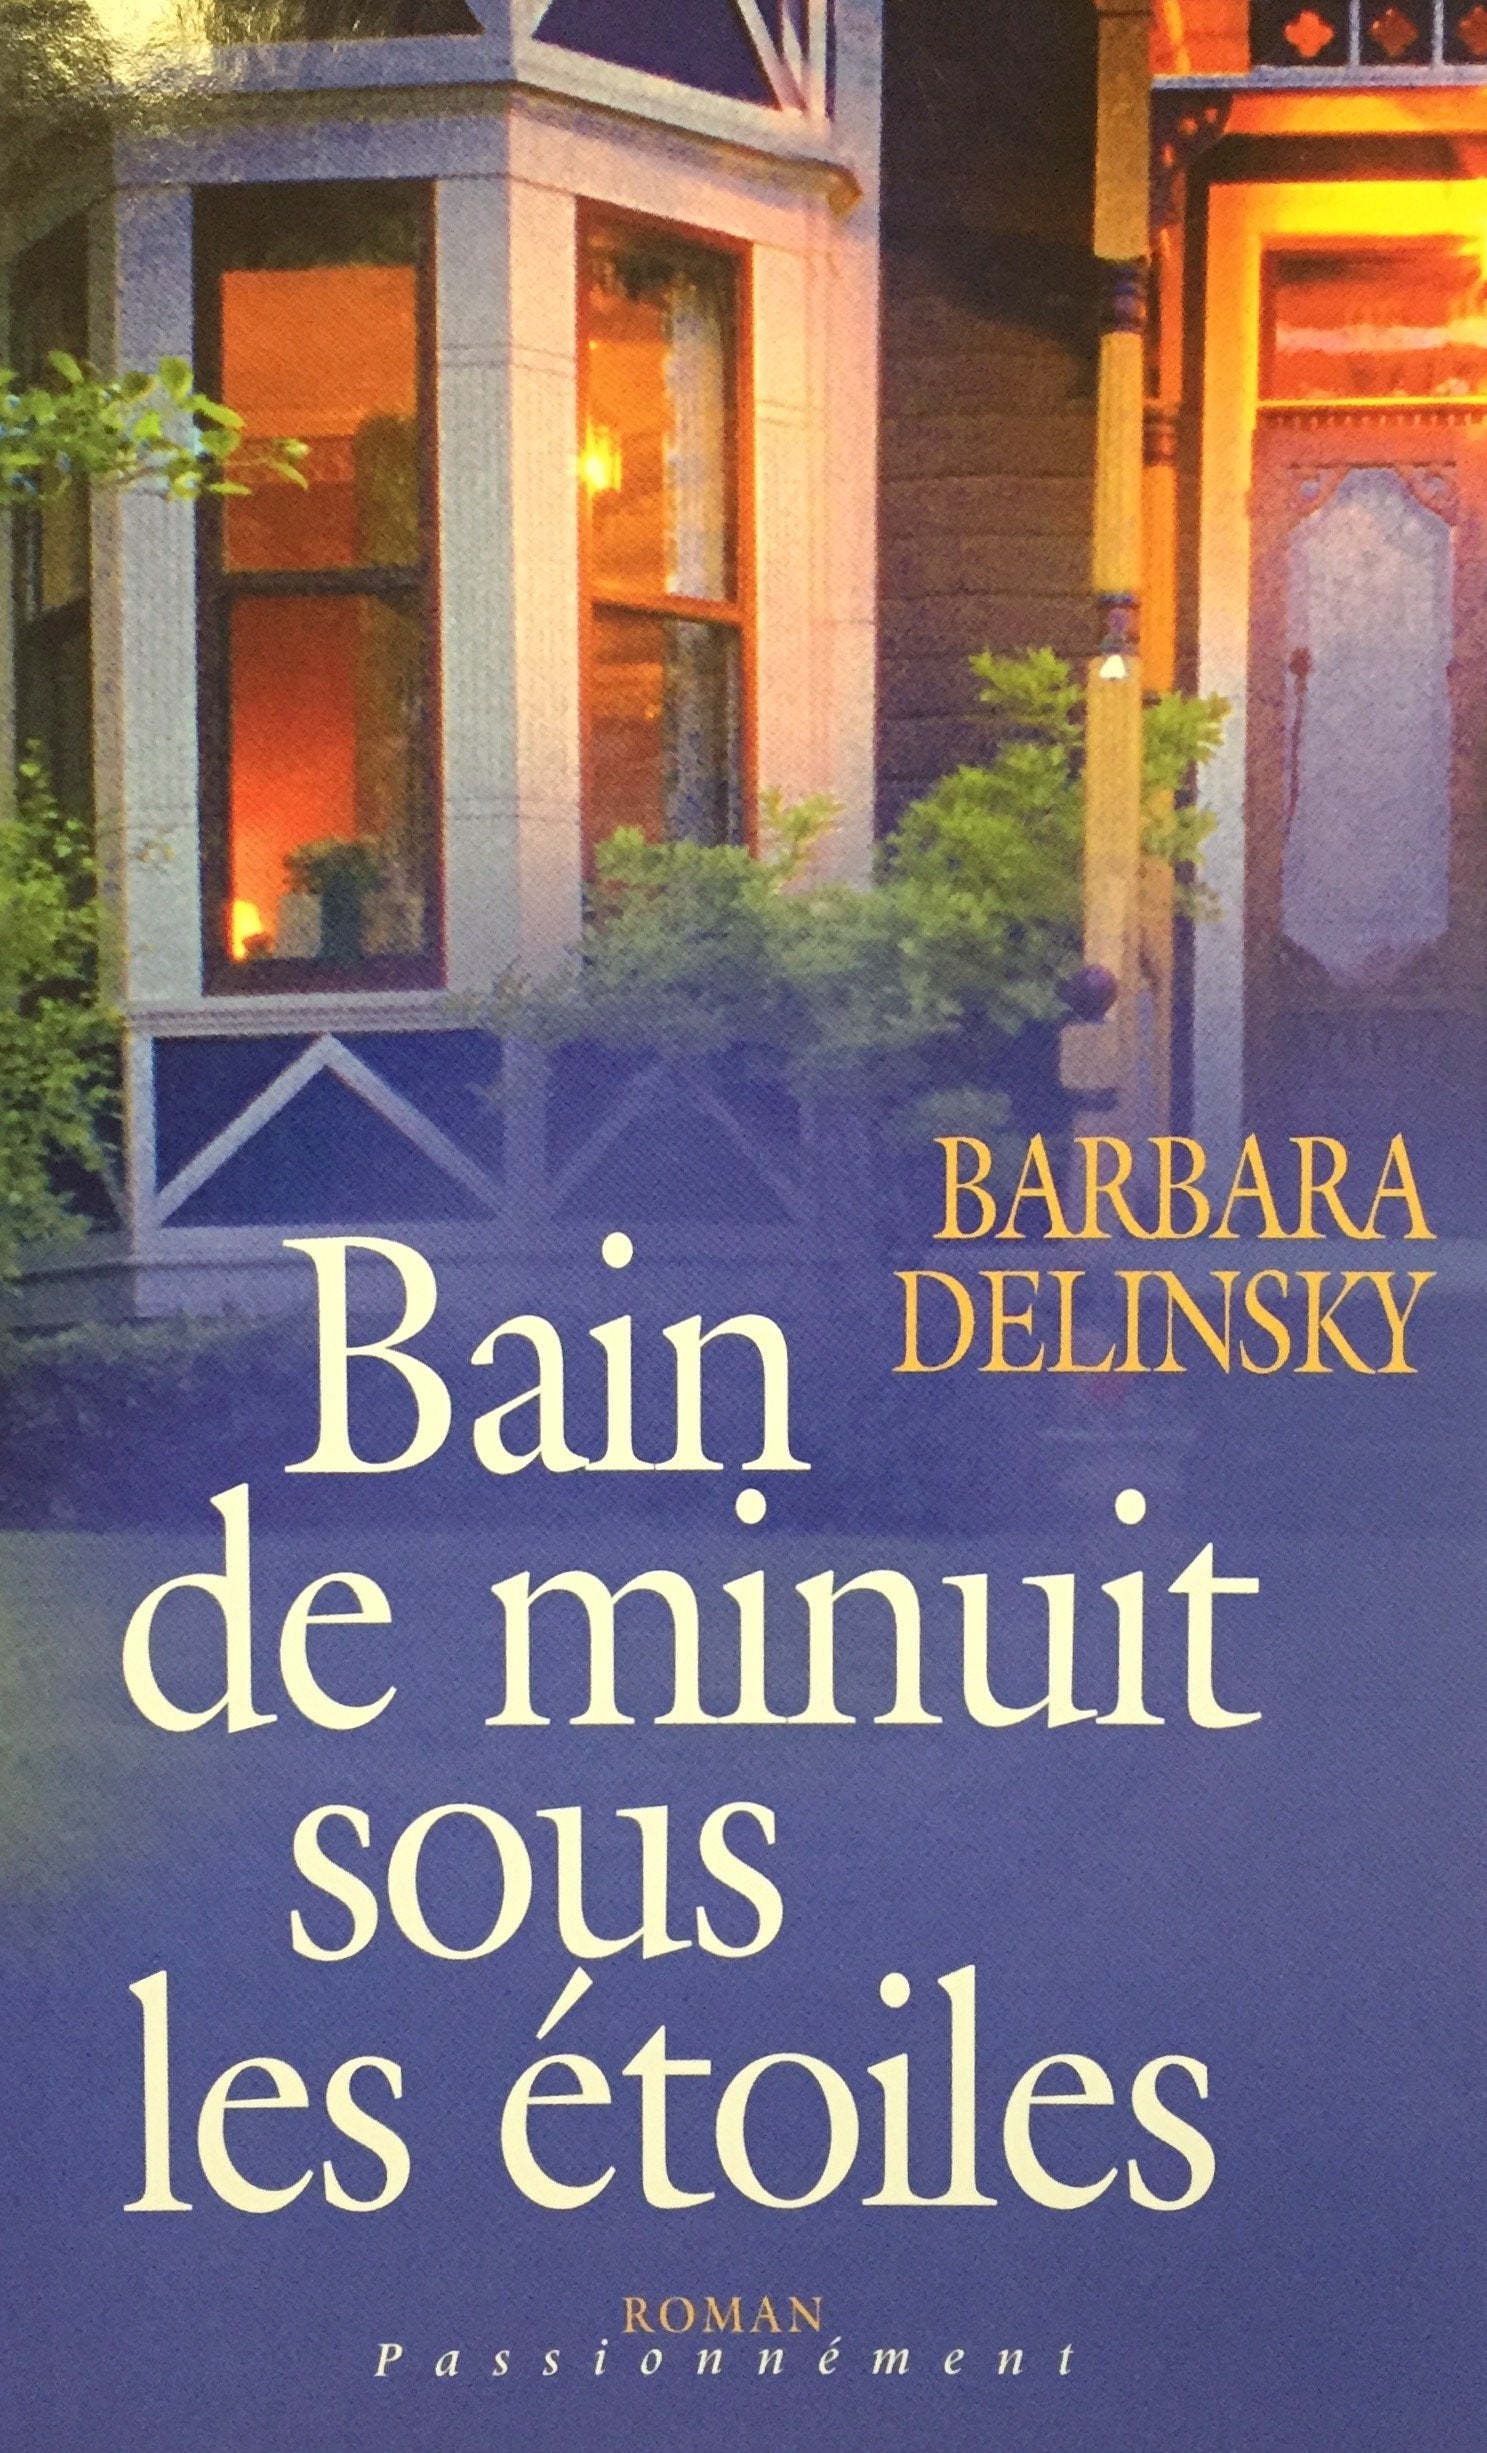 Livre ISBN 2298001103 Roman Passionnément : Bain de minuit sous les étoiles (Barbara Delinsky)